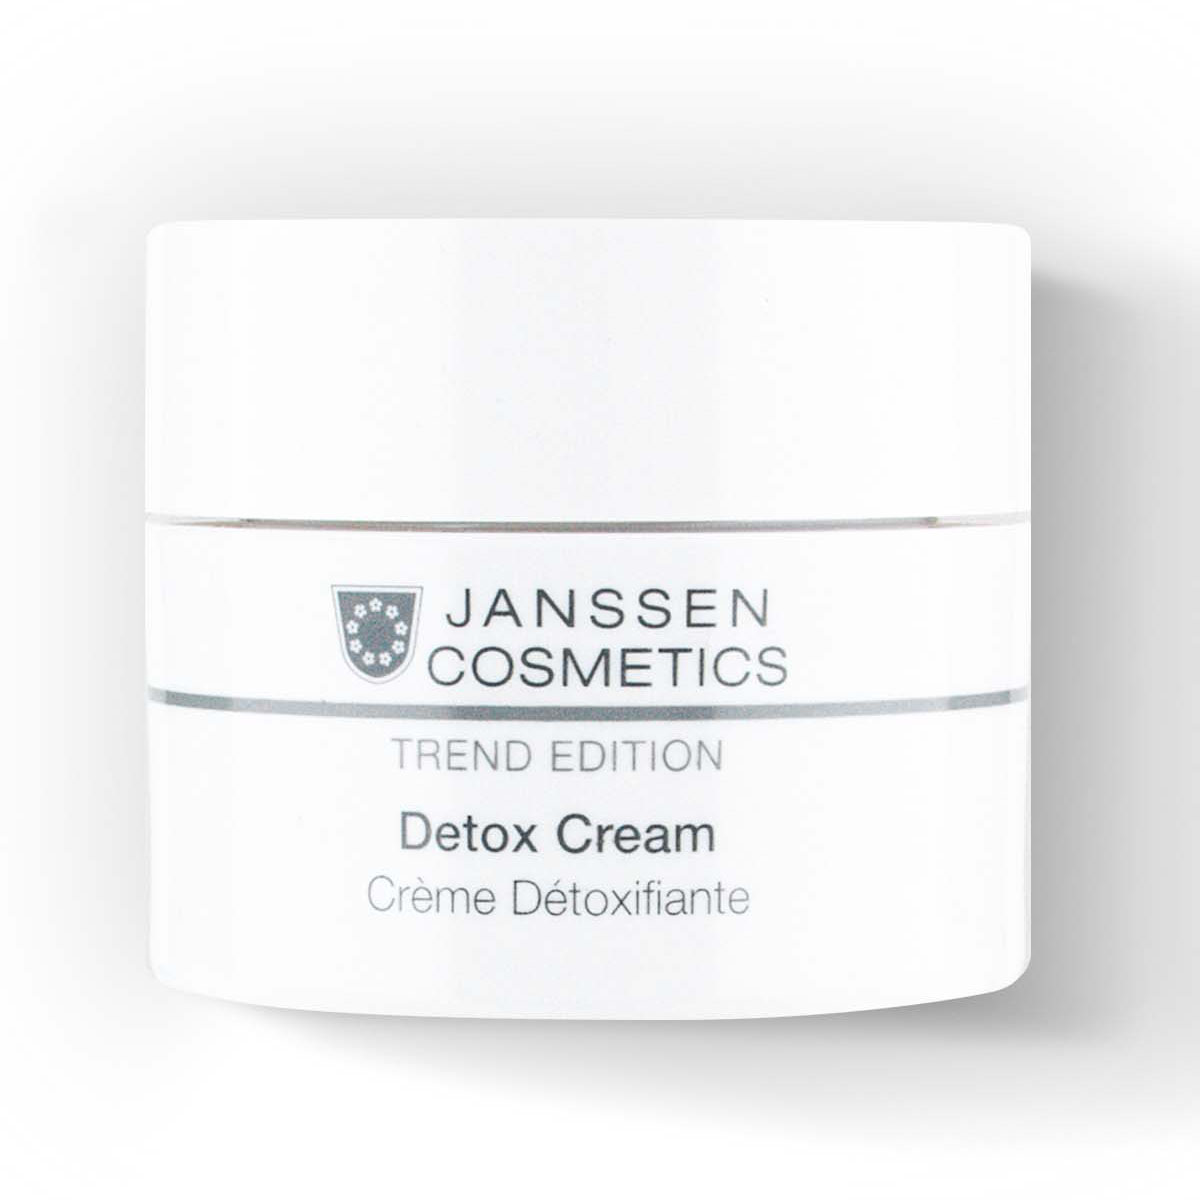 Janssen Cosmetics Детокс-крем Detox Cream, 50 мл (Janssen Cosmetics, Trend Edition) детокс крем janssen cosmetics detox cream 50 мл